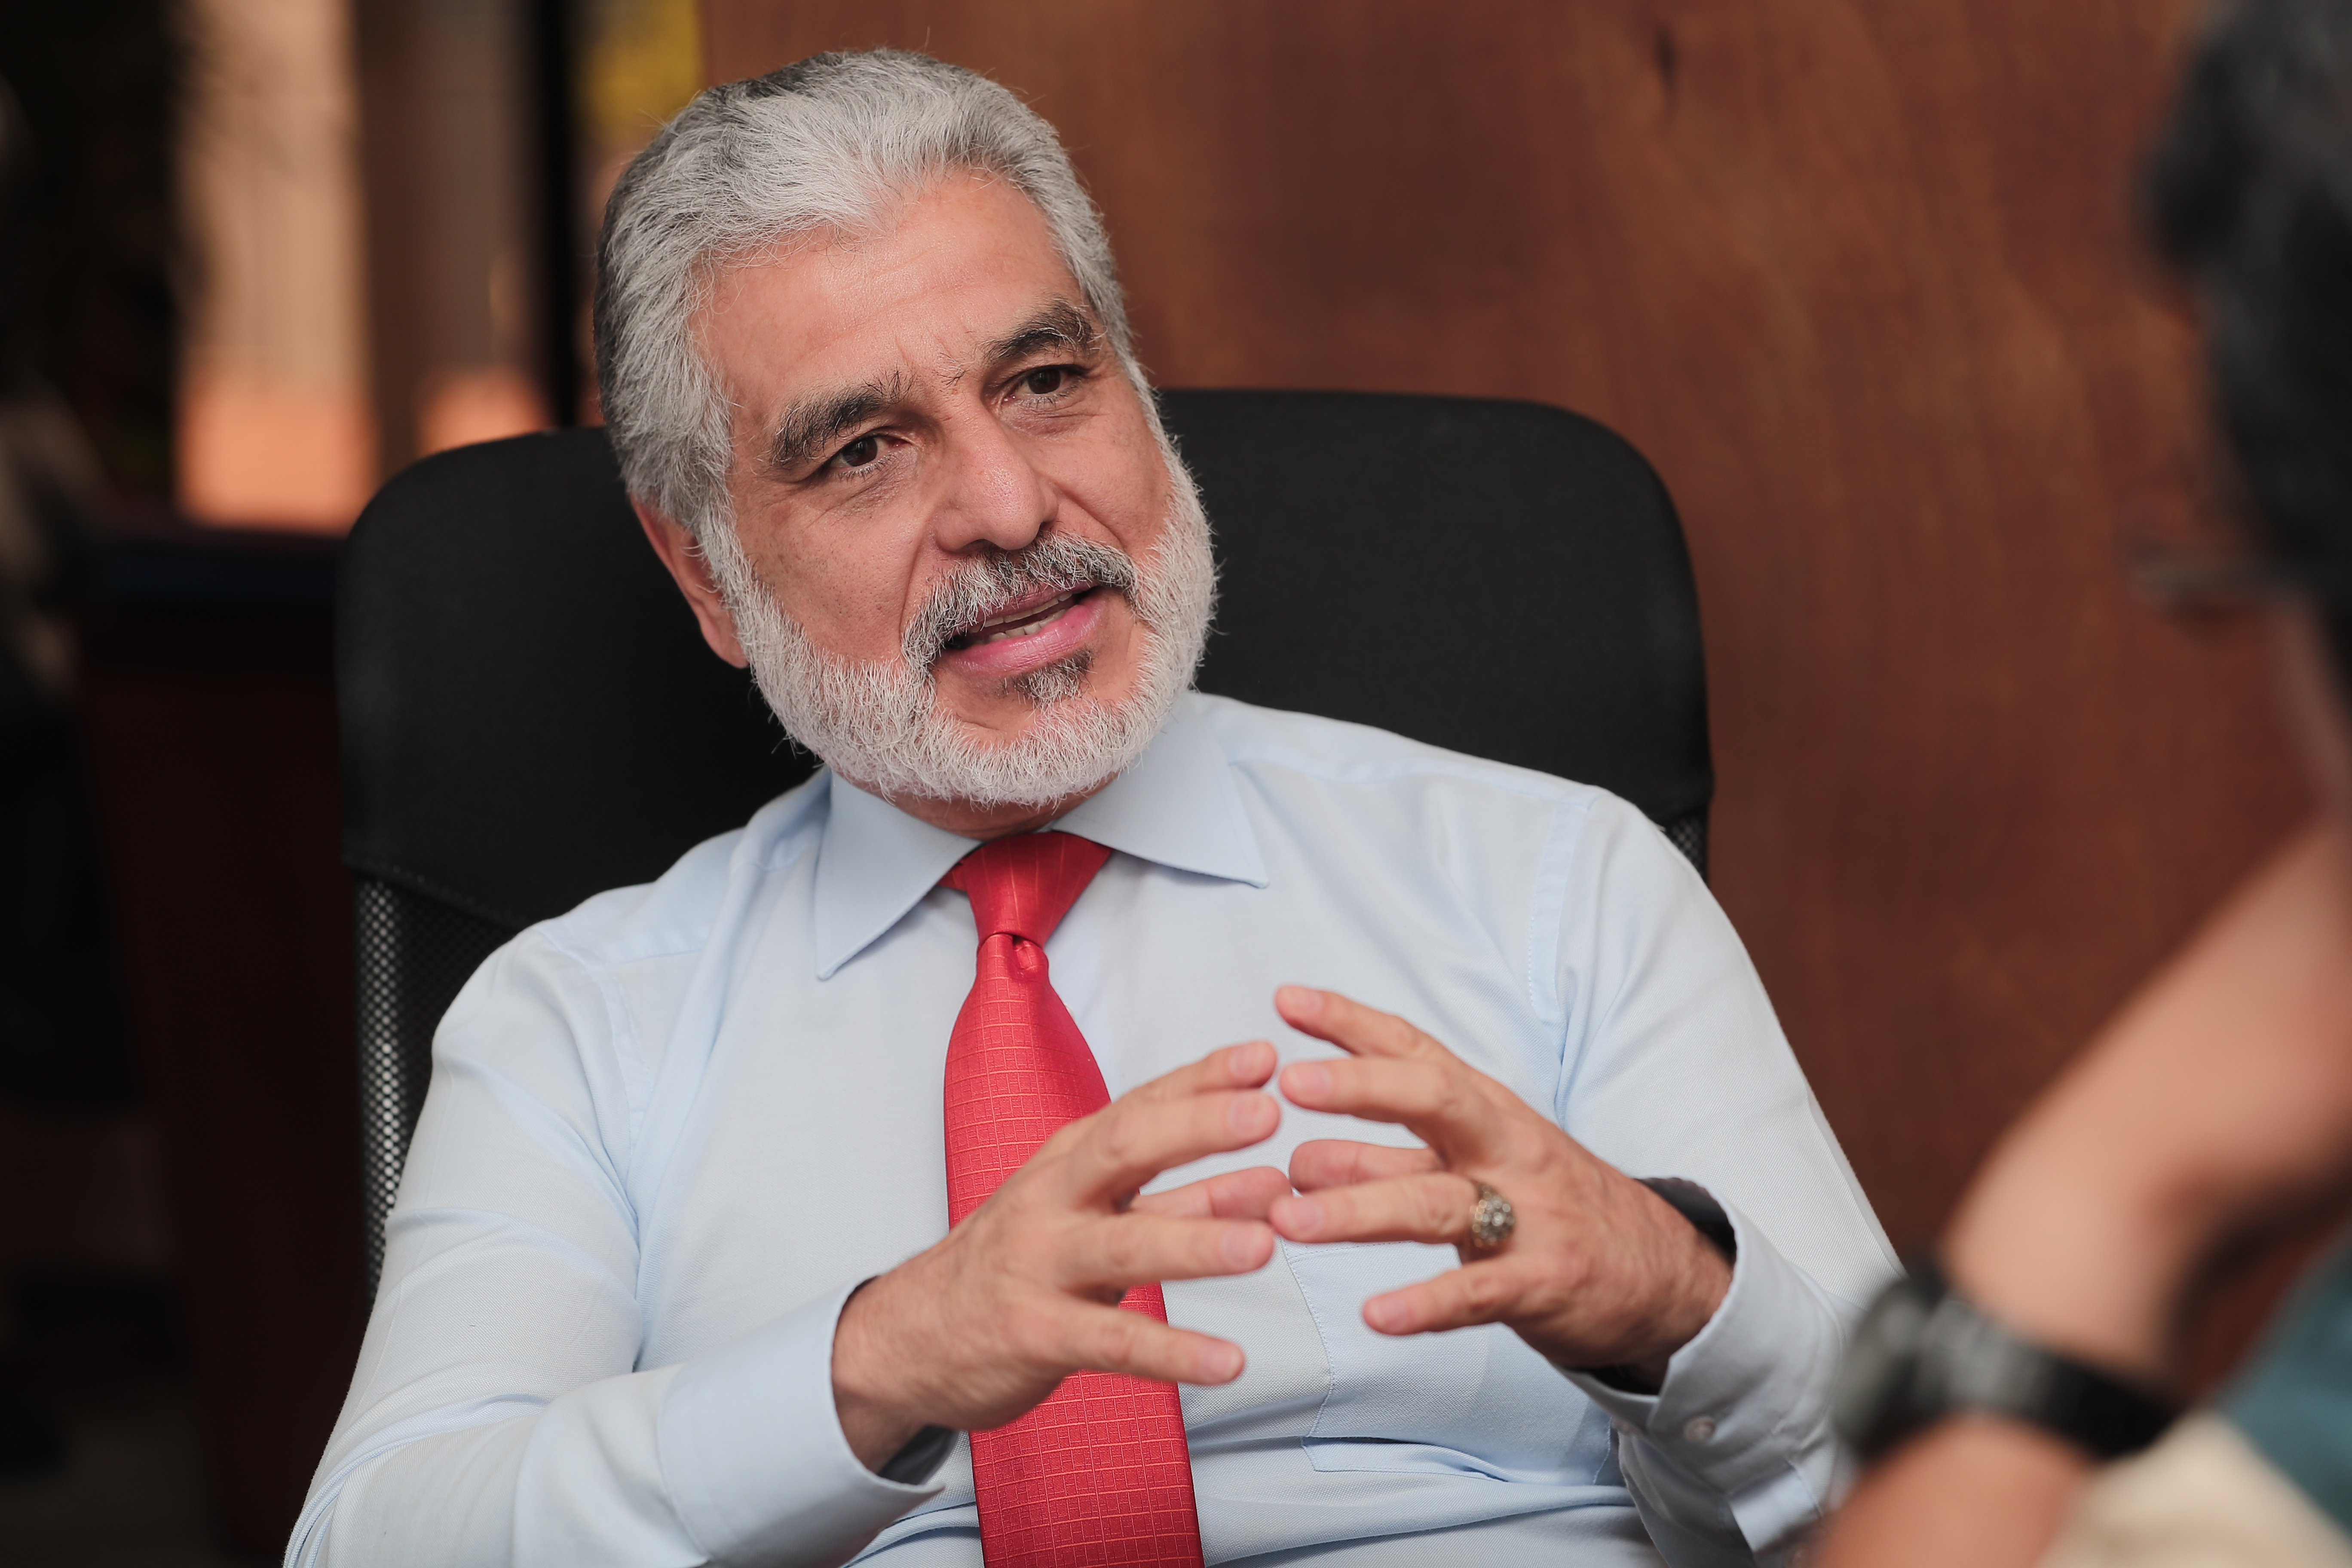 Carlos Contreras presidente de la junta directiva del IGSS, informó que el plan maestro de inversión es de Q3 mil millones. (Foto Prensa Libre: Juan Diego González)